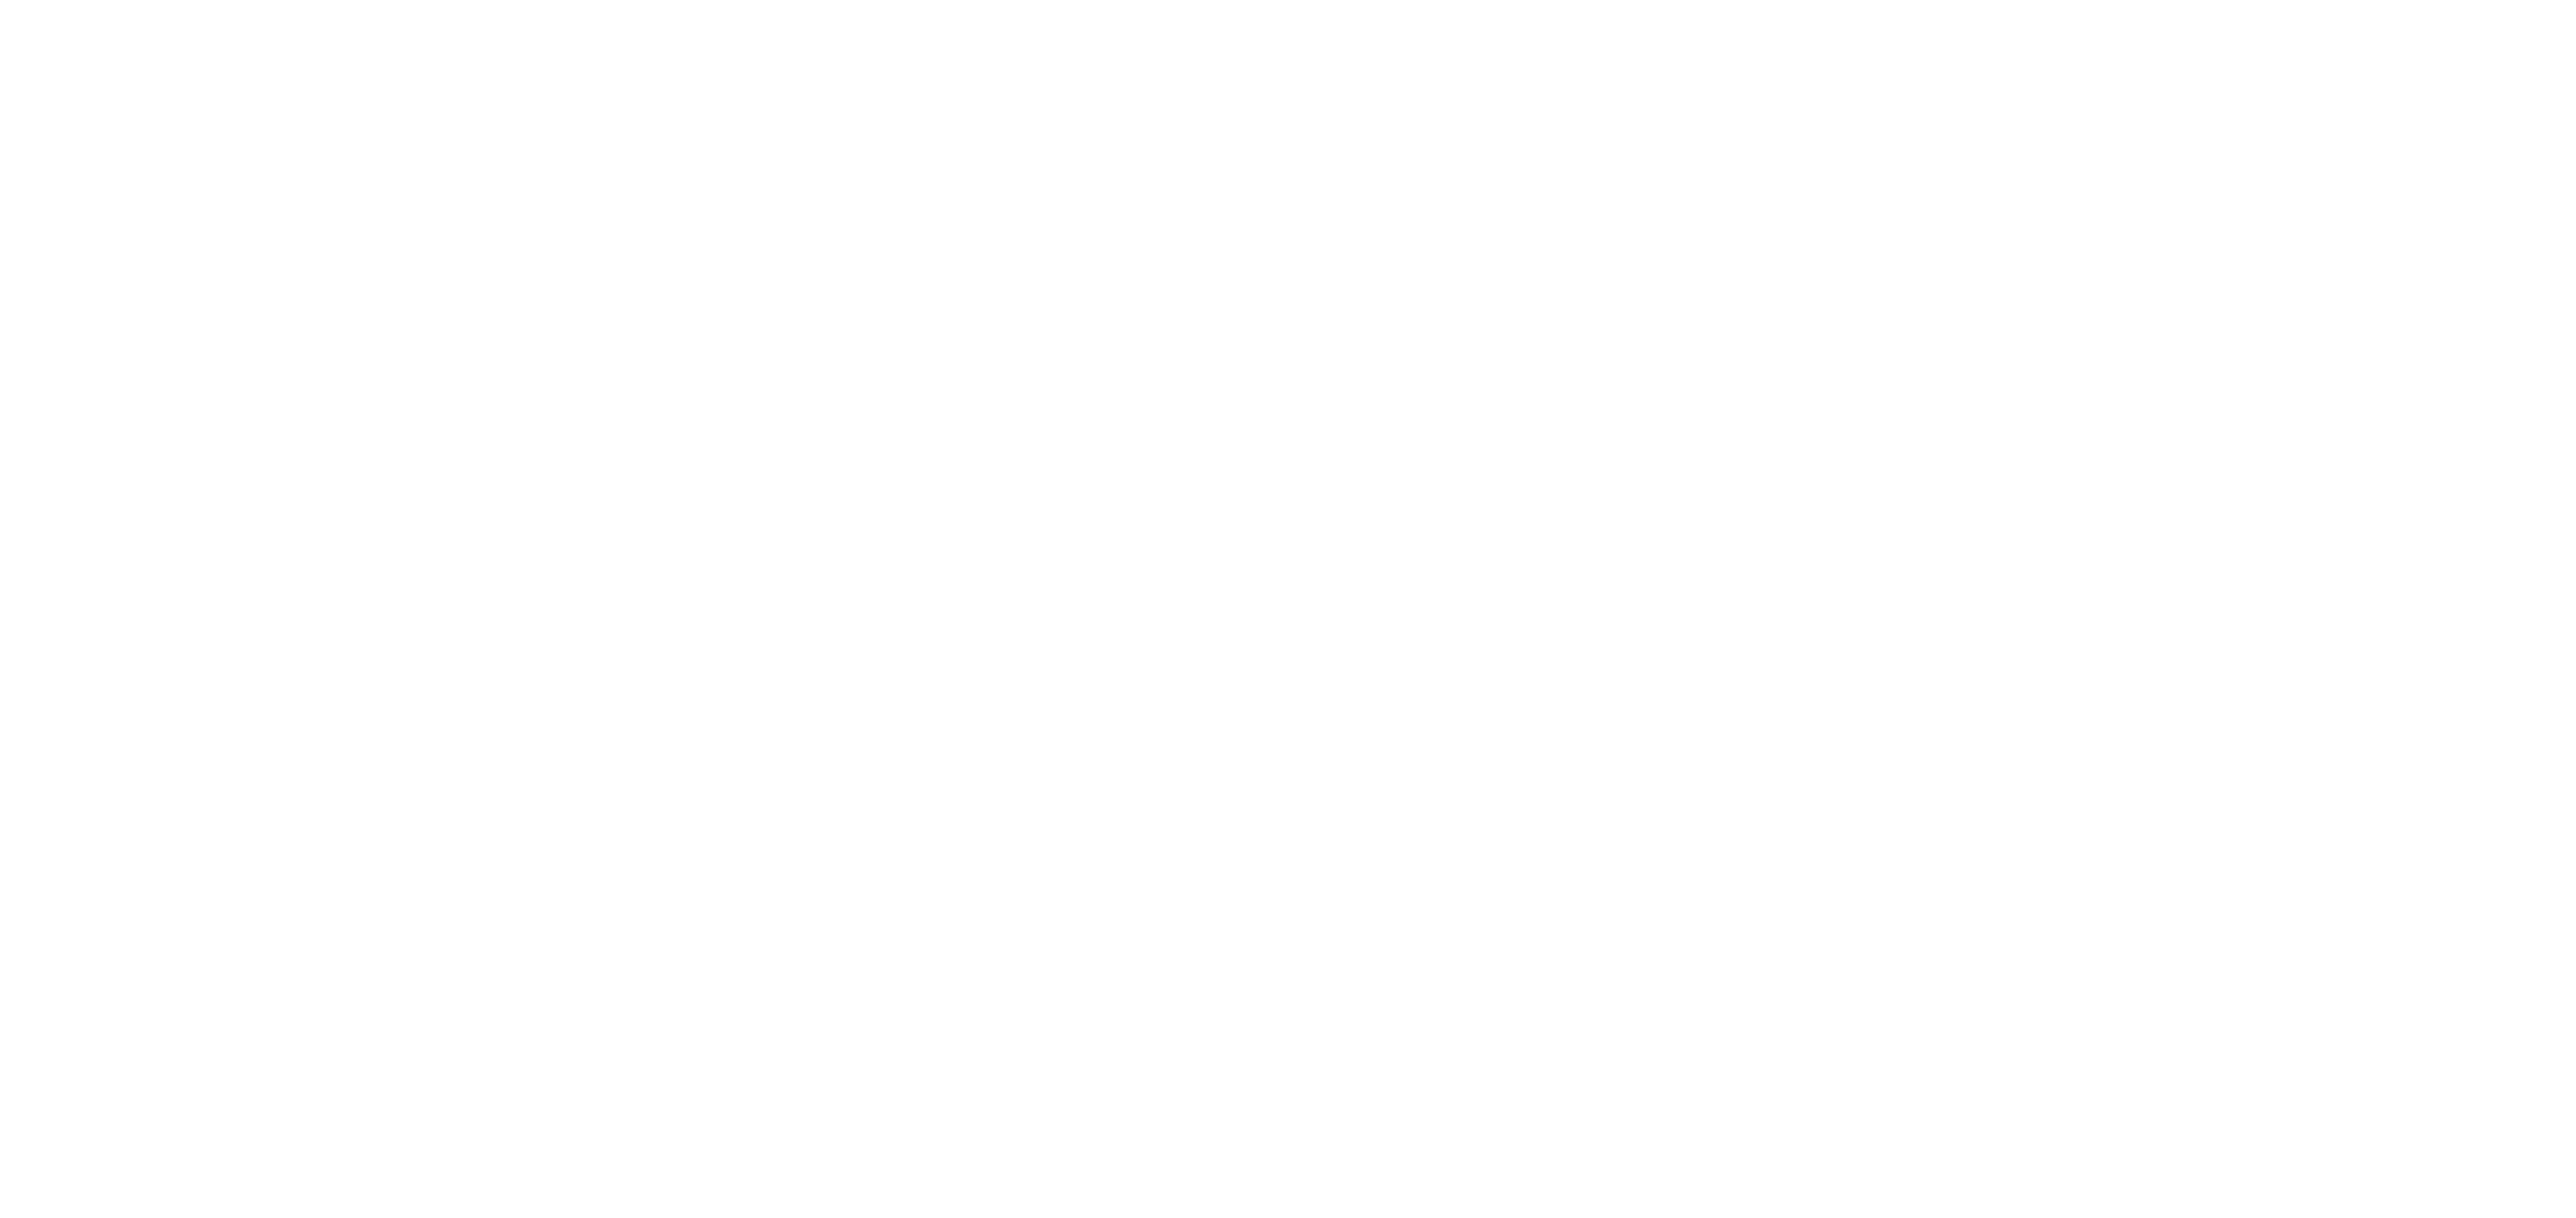 Kings Ransom logo